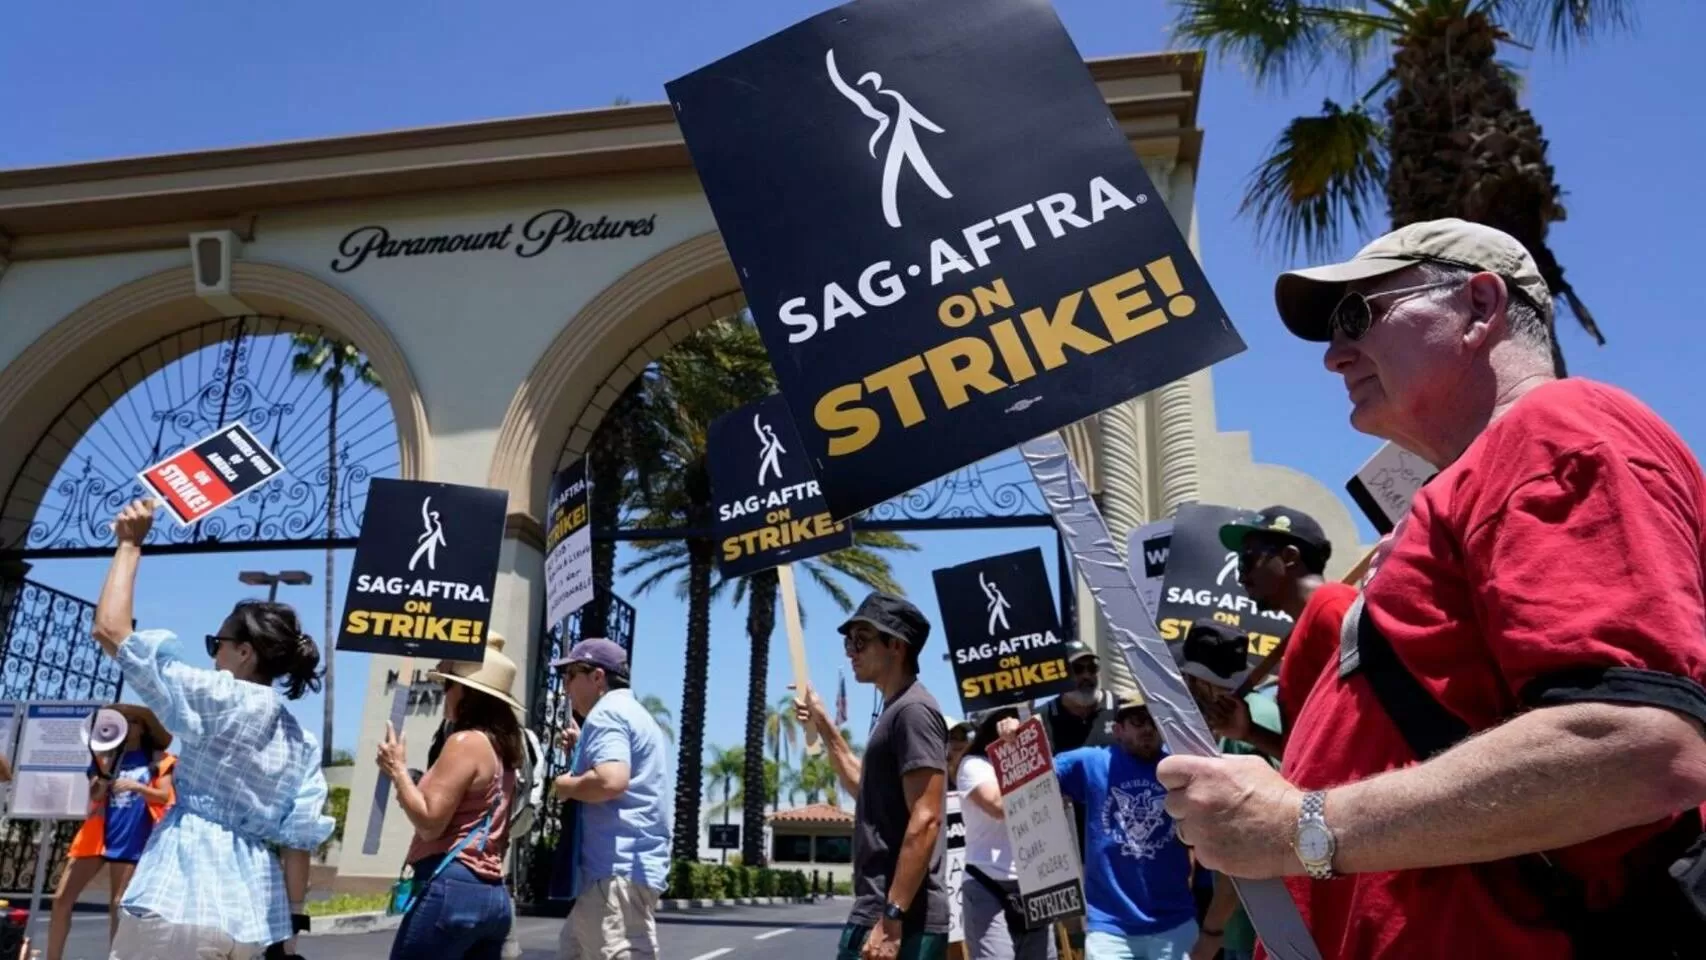 SAG-AFTRA podra anunciar una huelga de actores de videojuegos en el futuro